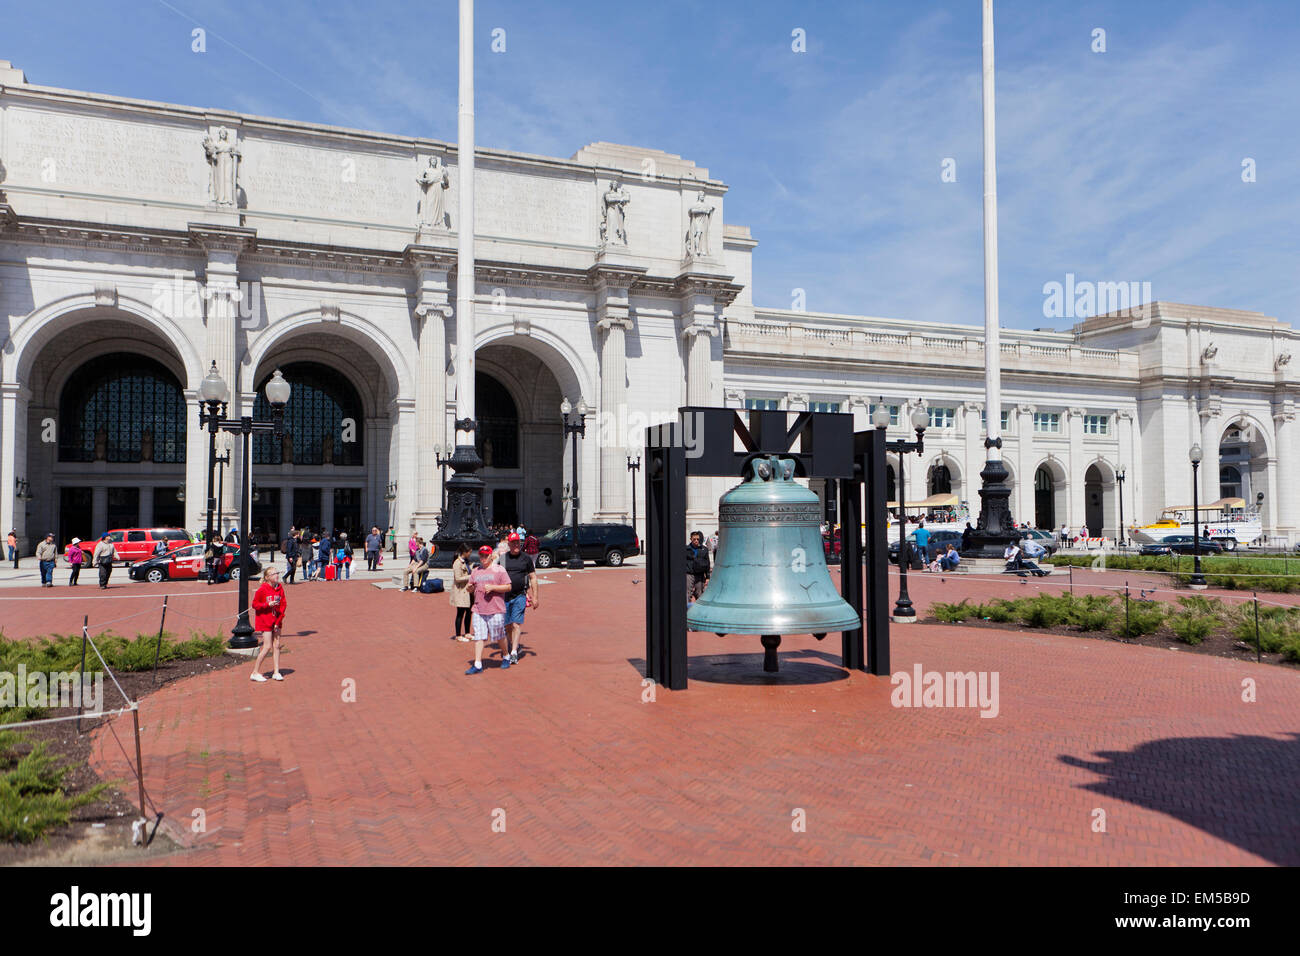 La liberté de la Légion américaine Bell à la gare Union - Washington, DC USA Banque D'Images